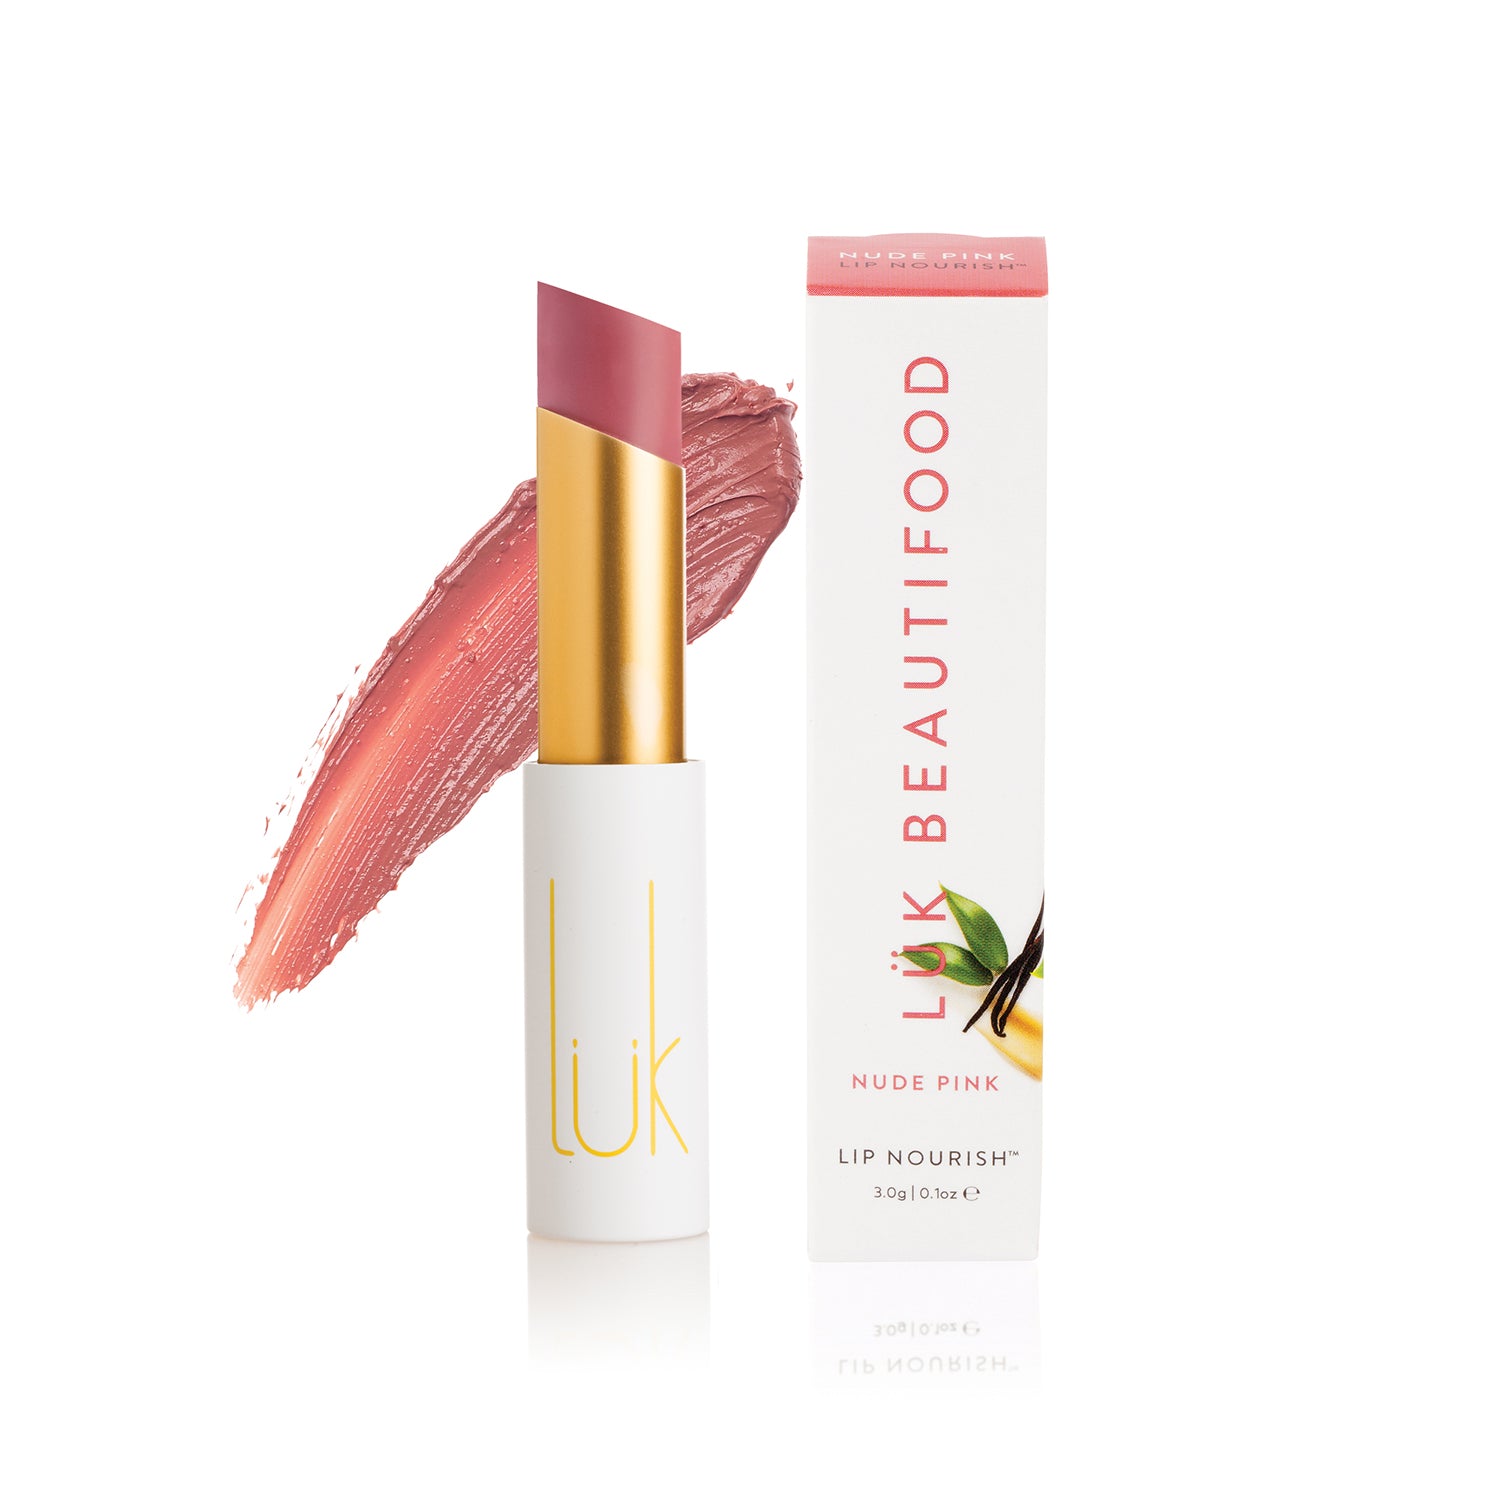 100% Natural Lip Nourish™ Nude Pink Lük Beautifood